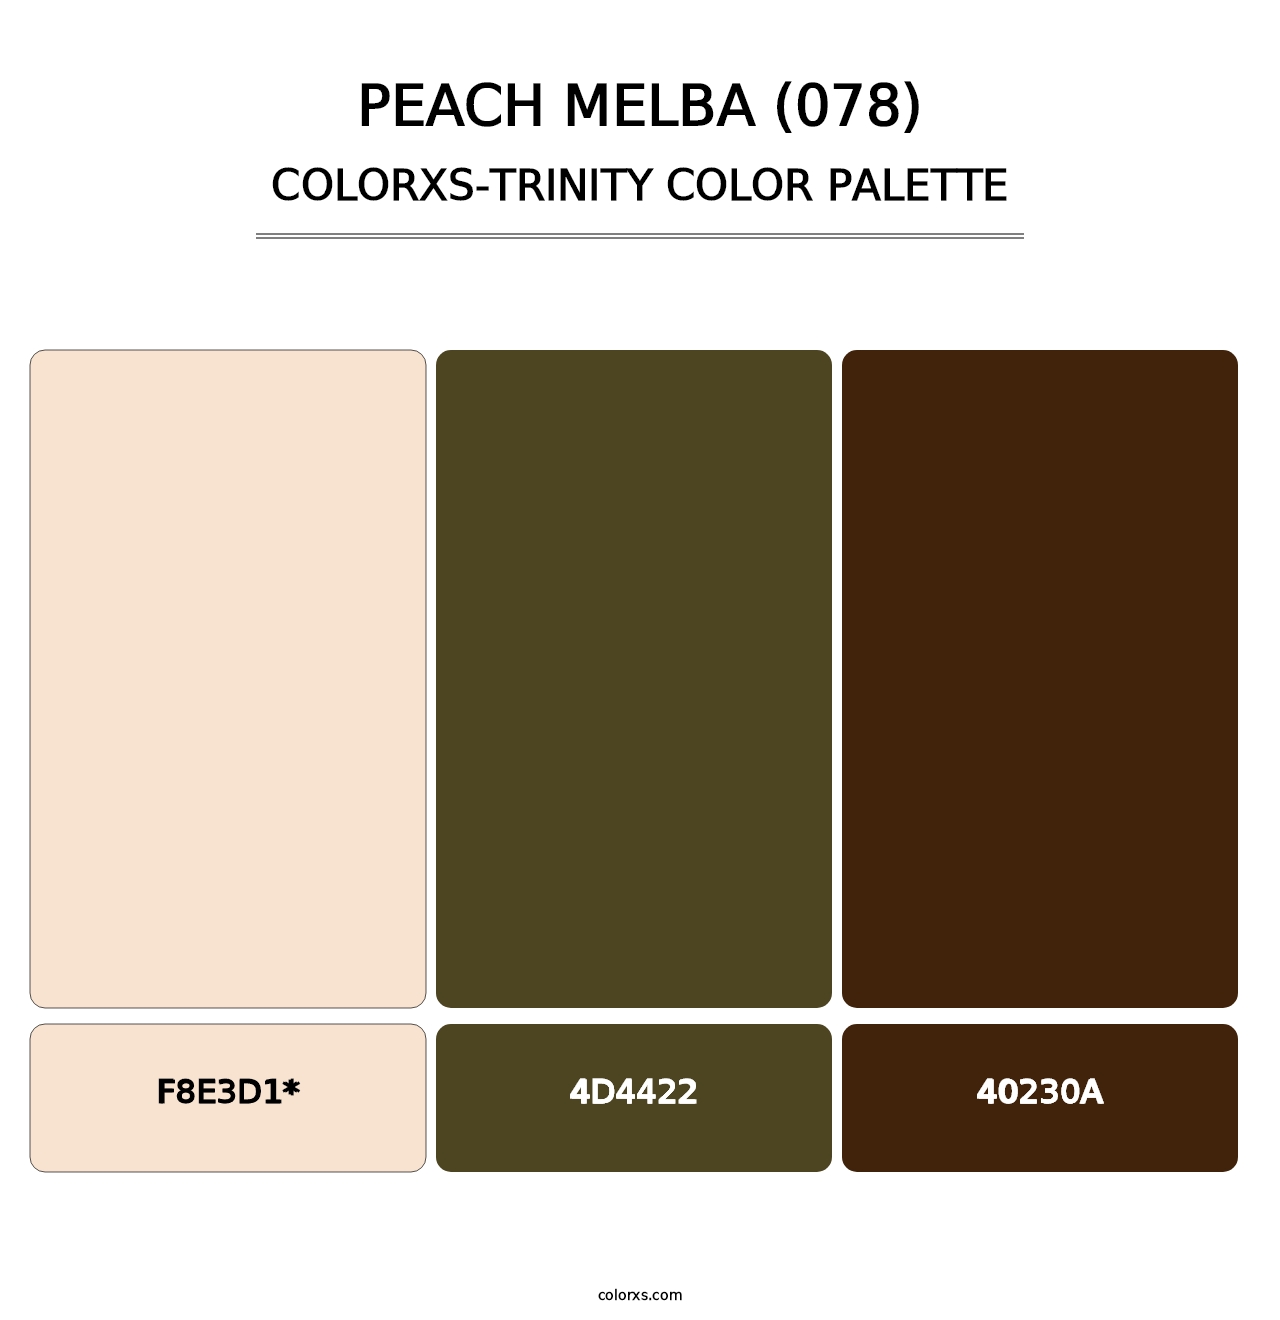 Peach Melba (078) - Colorxs Trinity Palette